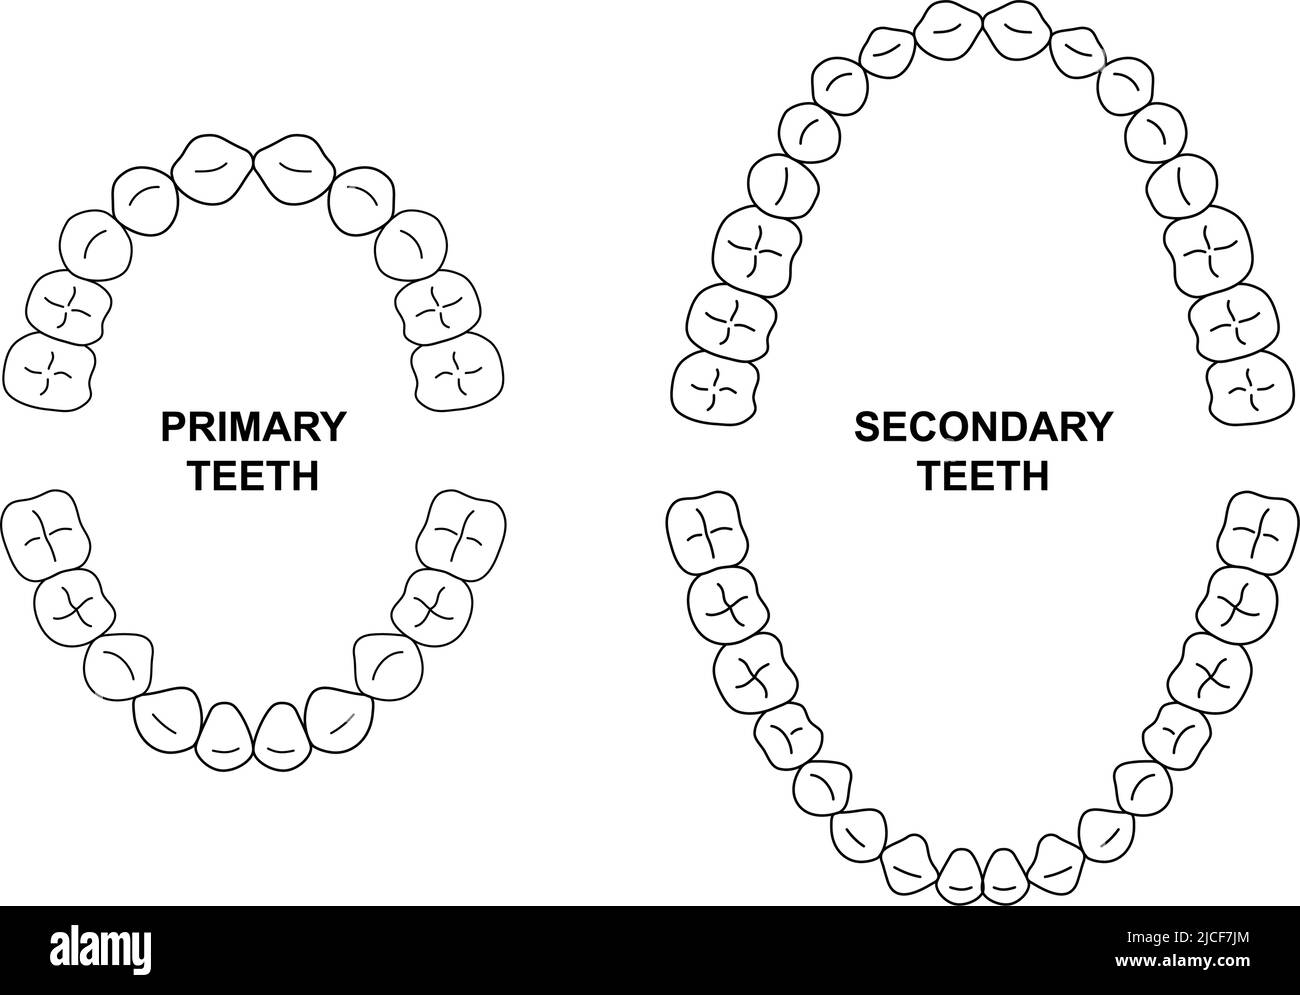 Anatomie des dents secondaires et primaires. Illustration des mâchoires pour enfant et adulte. Tableau d'arrivée des dents pour adultes et enfants. Silhouette des dents secondaires et primaires Illustration de Vecteur